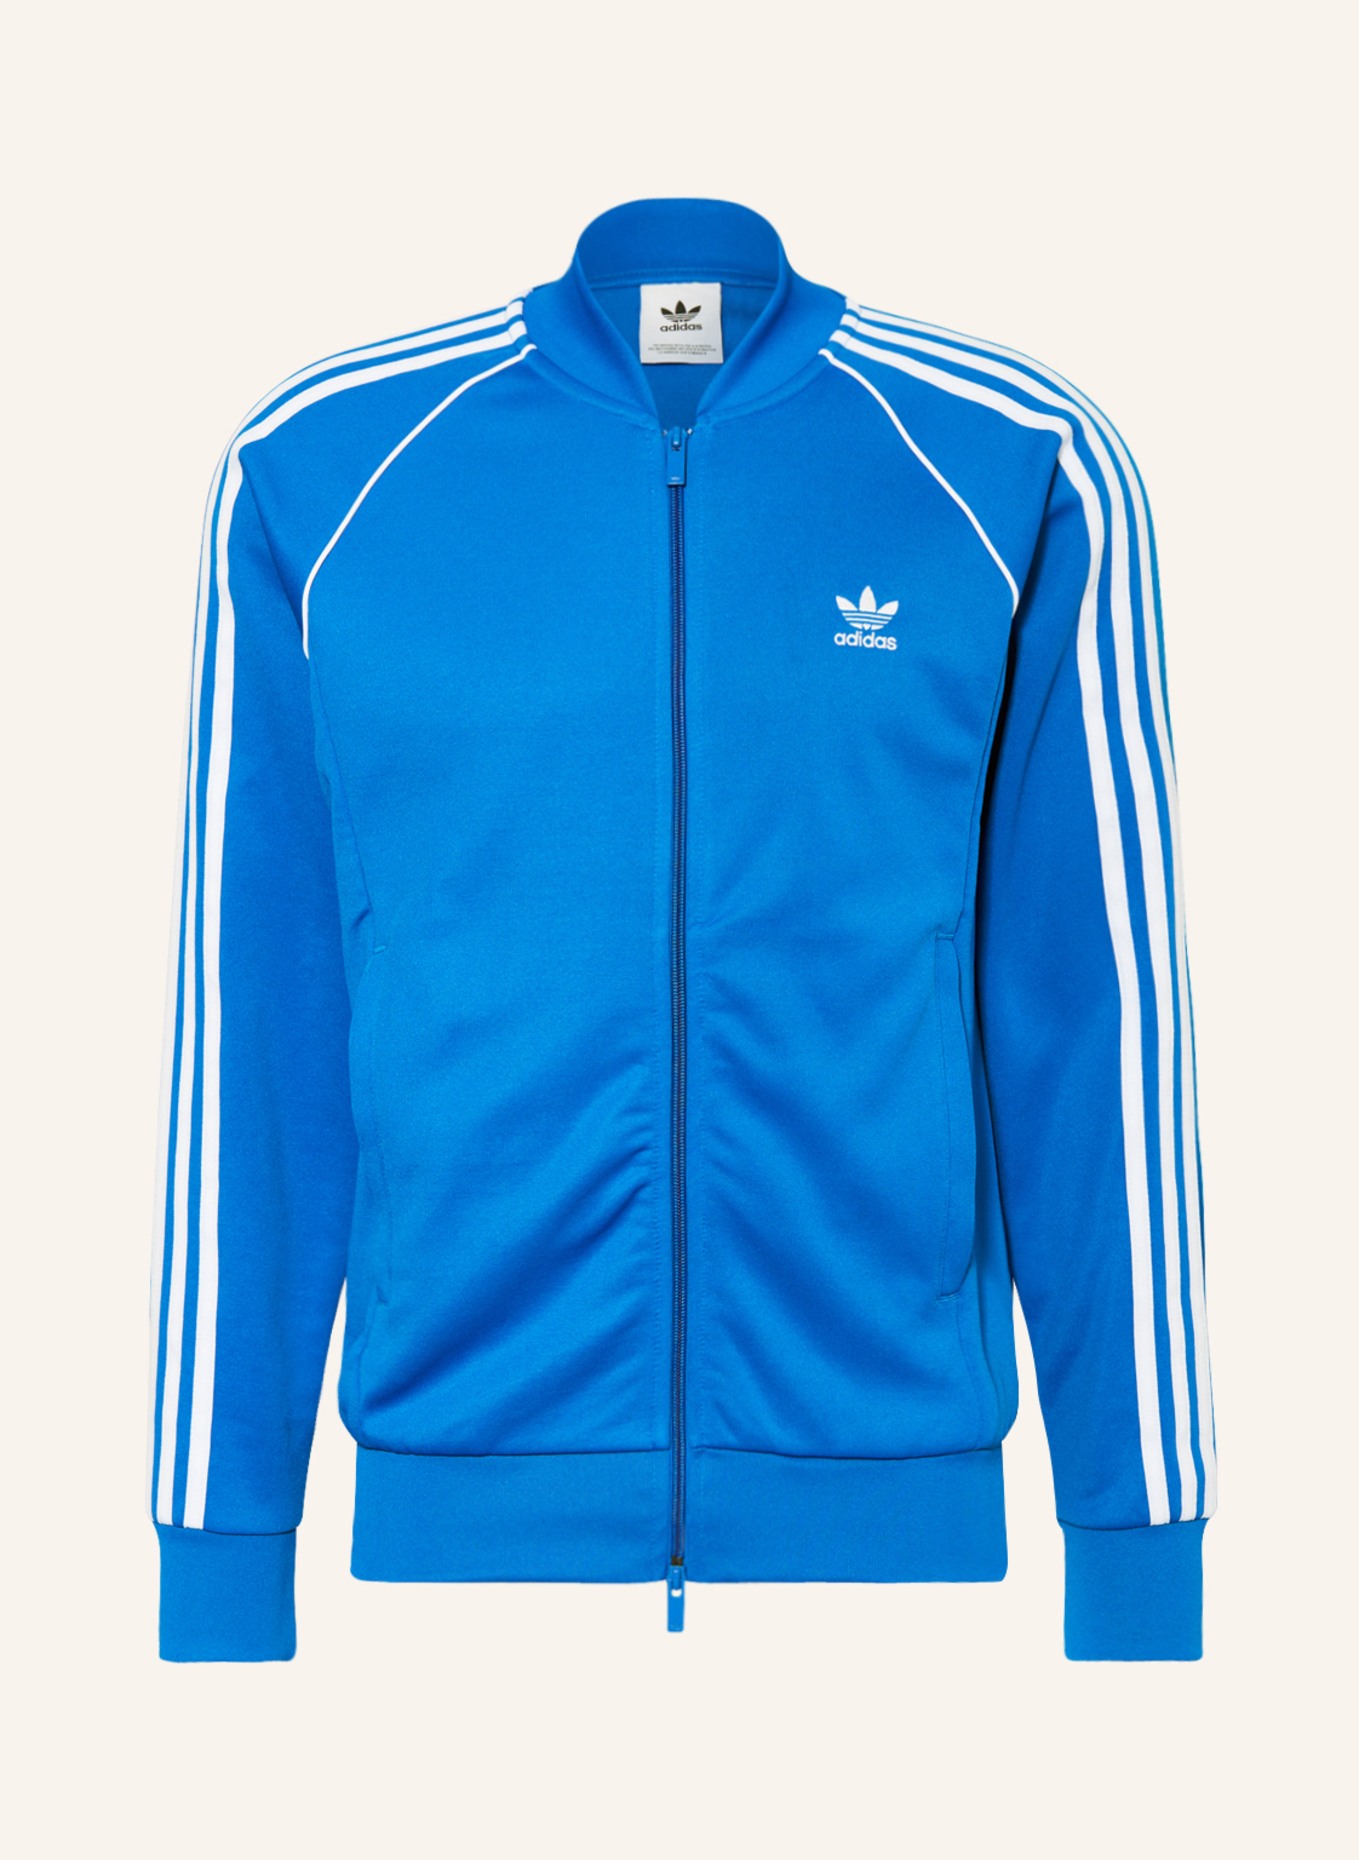 jacket Training in SST CLASSICS adidas Originals blue/ ADICOLOR white ORIGINALS